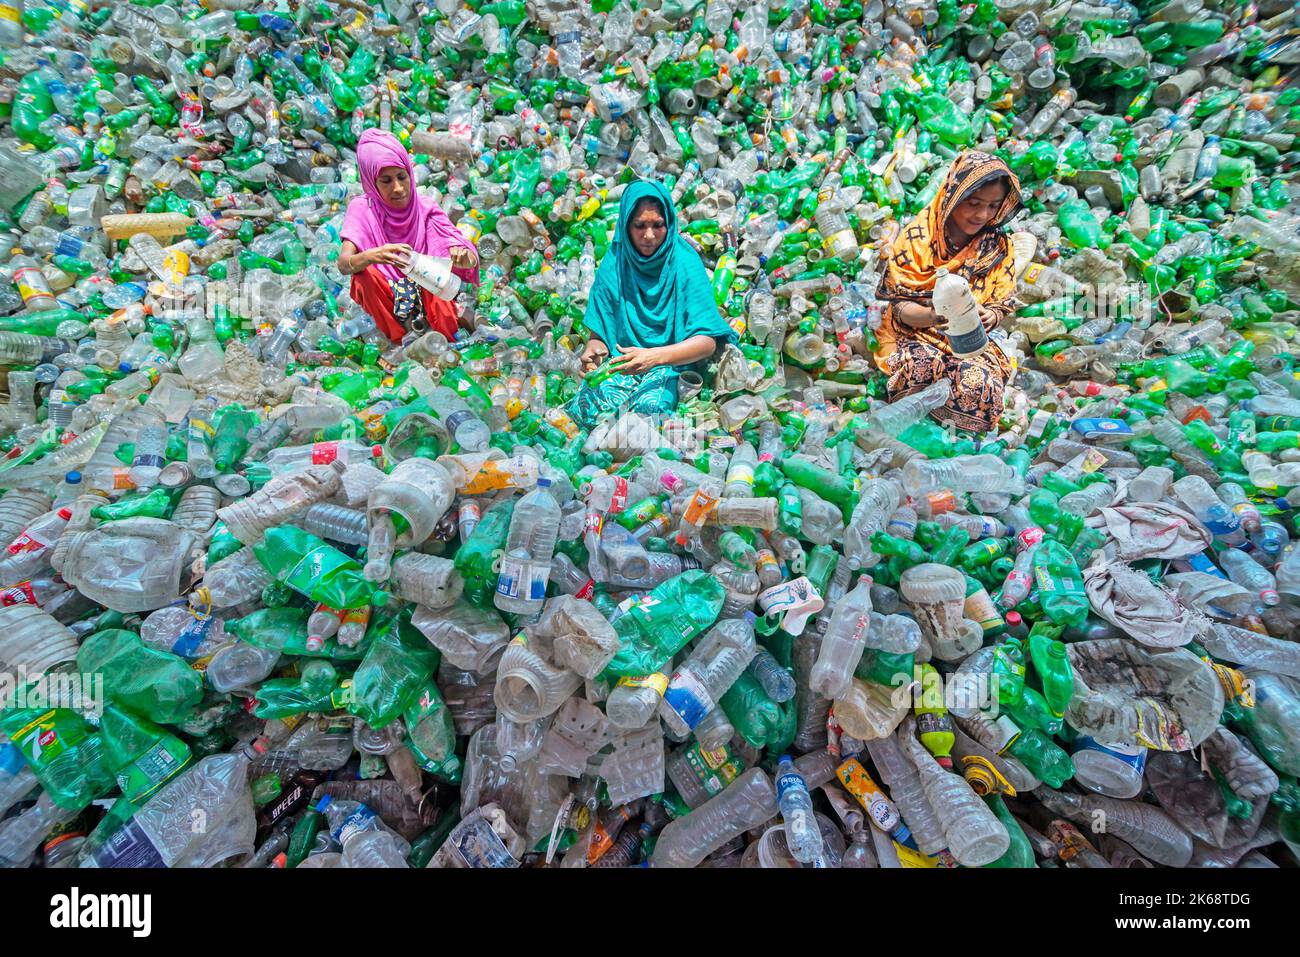 Arbeiter sortieren gebrauchte Plastikflaschen in einer Recyclingfabrik. Das Recycling von Kunststoffen ist der beste Weg, um unsere Umwelt sauber und sicher zu machen. Stockfoto